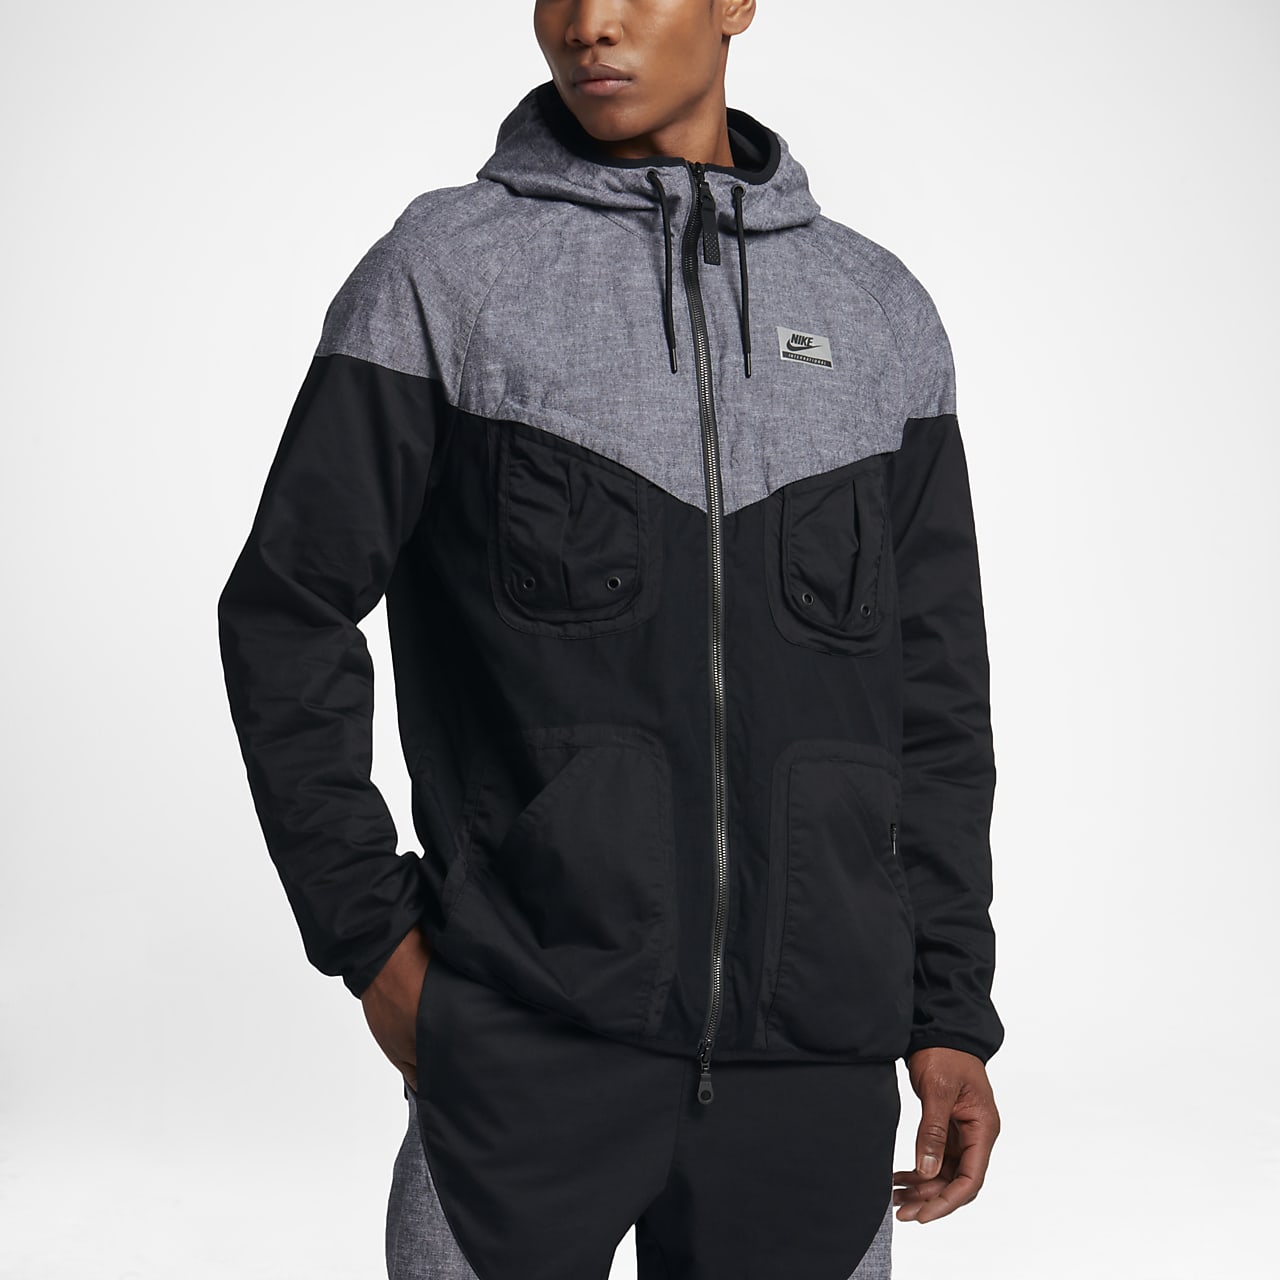 Nike International Windrunner Men's Jacket